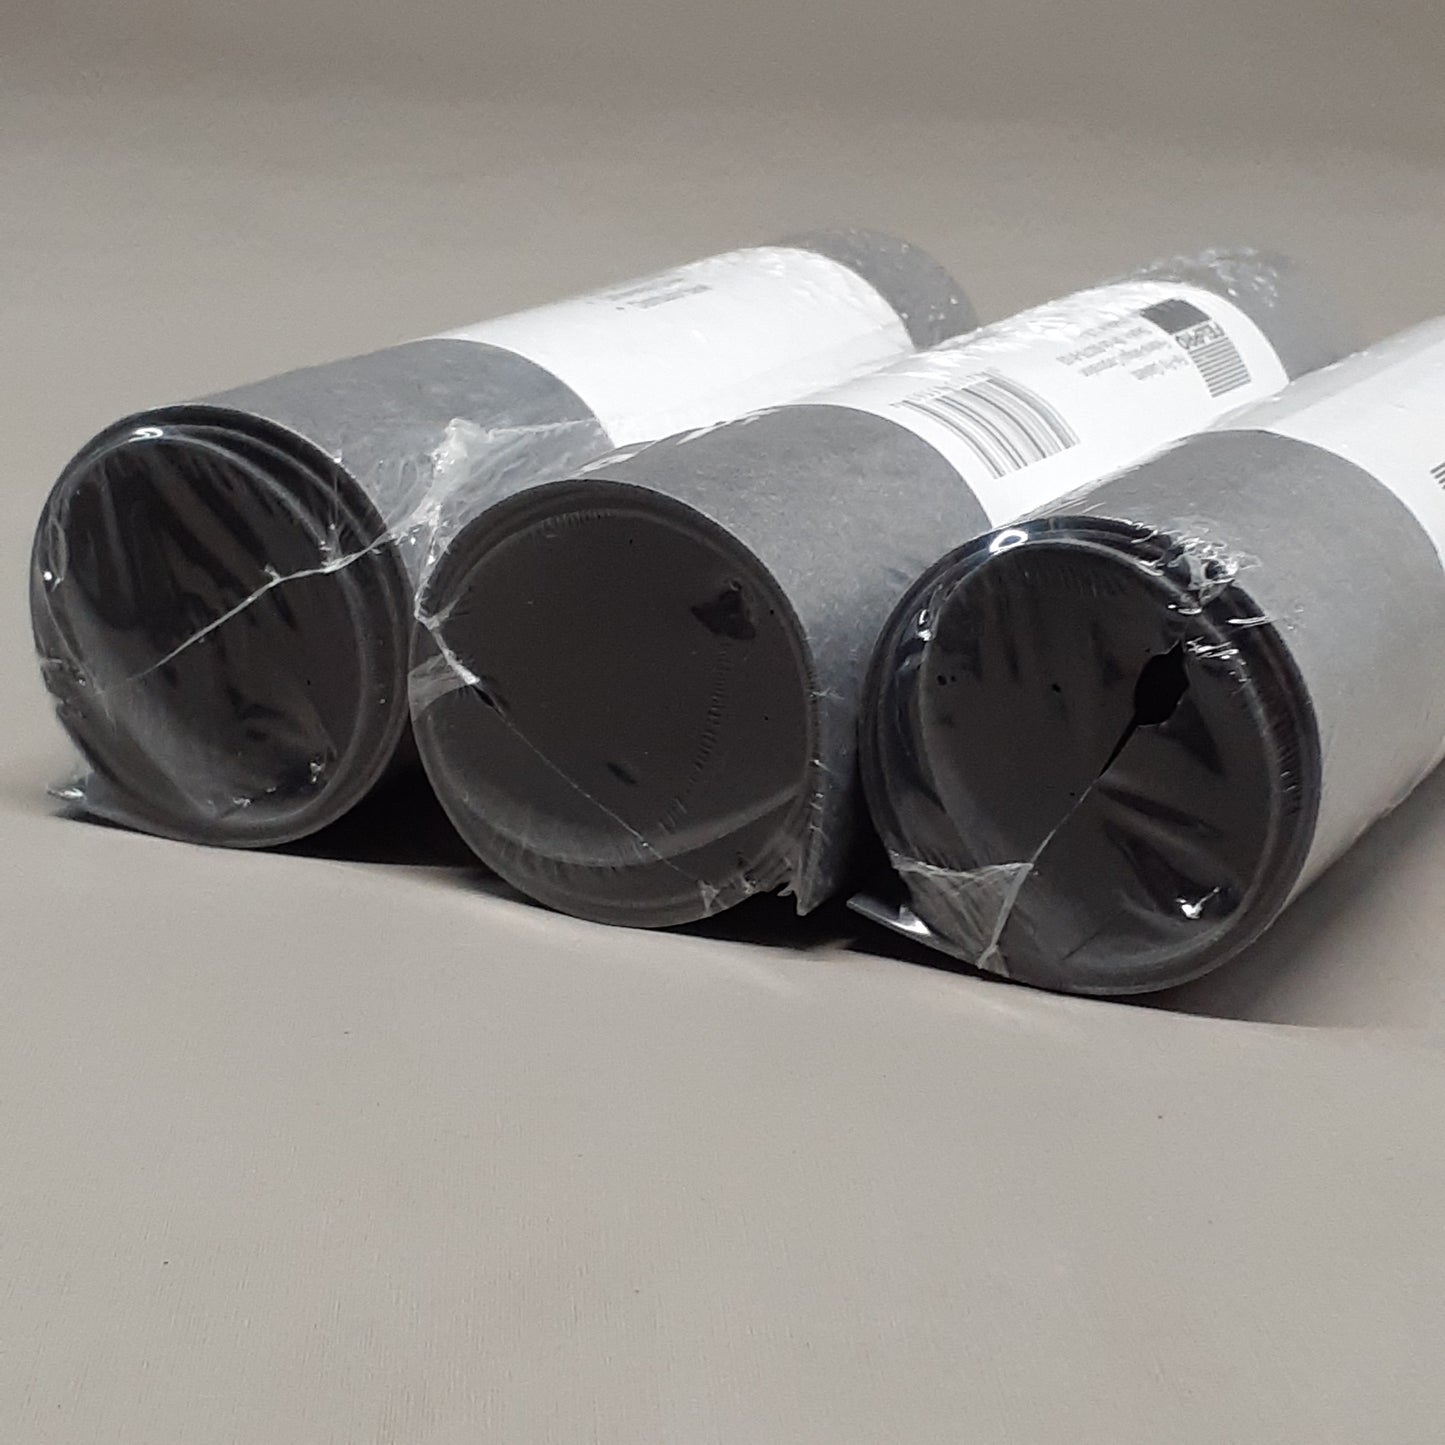 FEL-PRO 3-Pack! Gasket Rubber-Fiber Sheets 3157 (New)